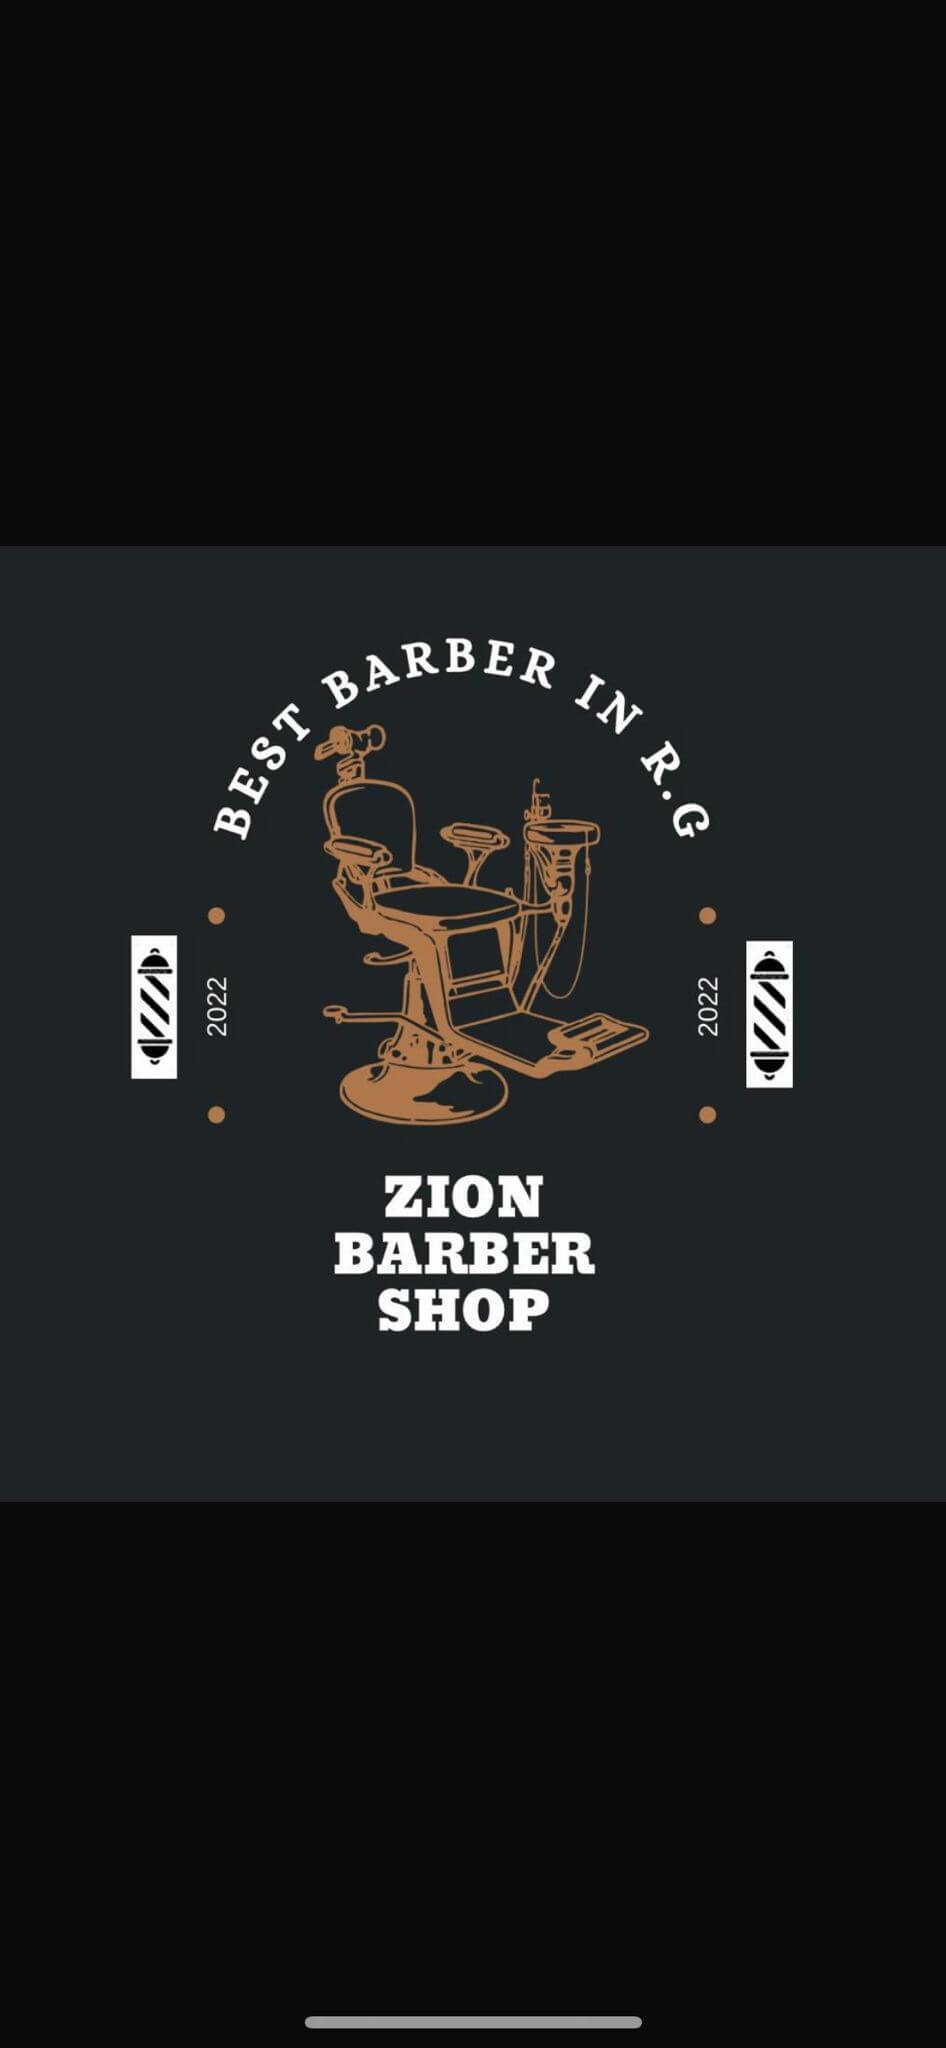 Zion barber shop | lee